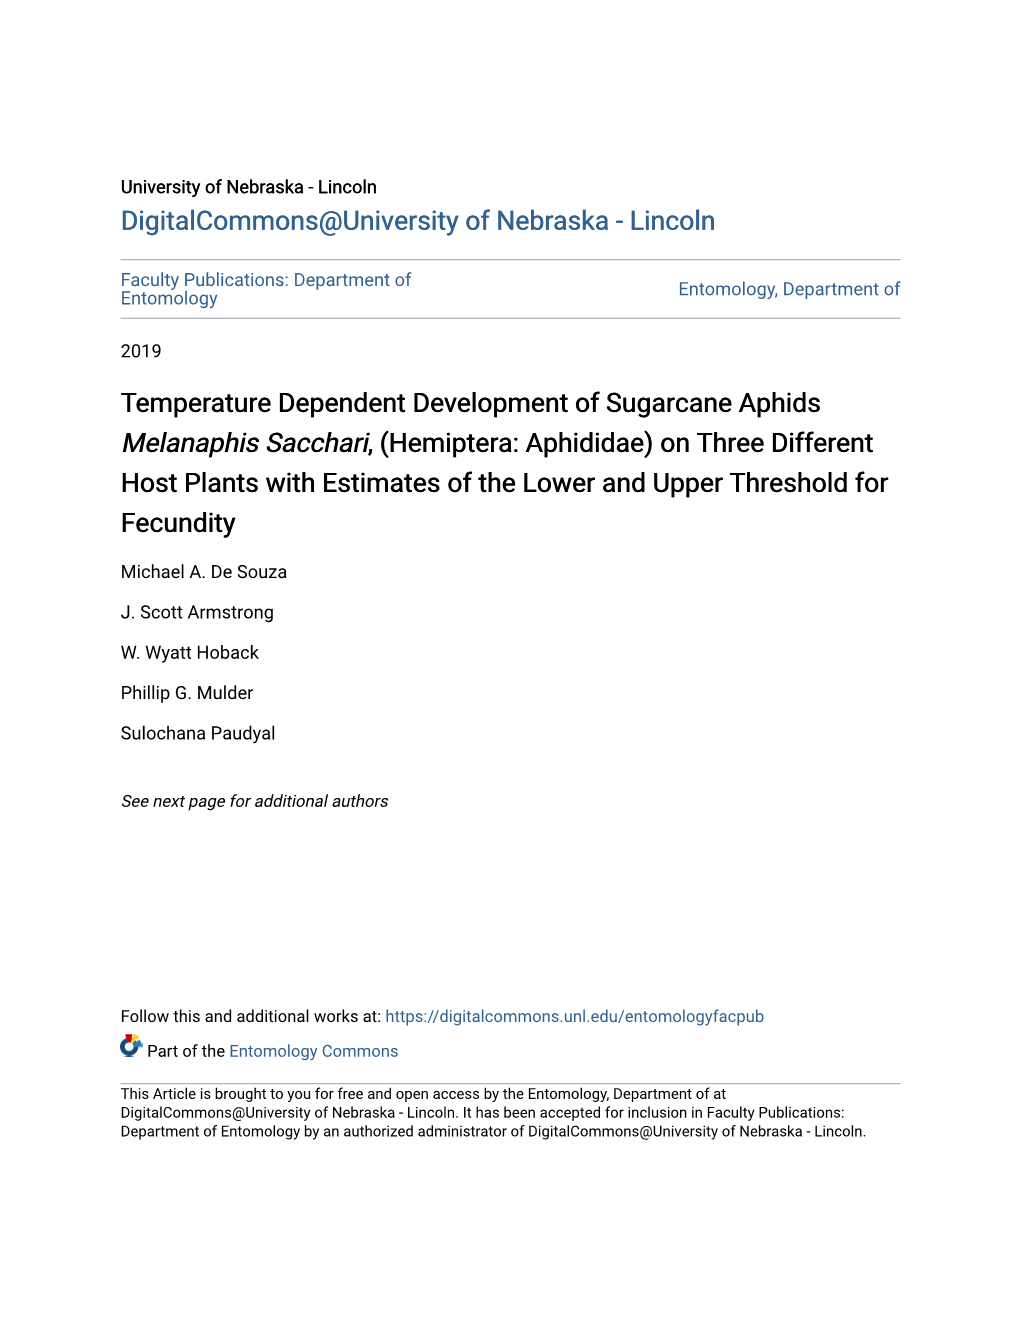 Temperature Dependent Development of Sugarcane Aphids